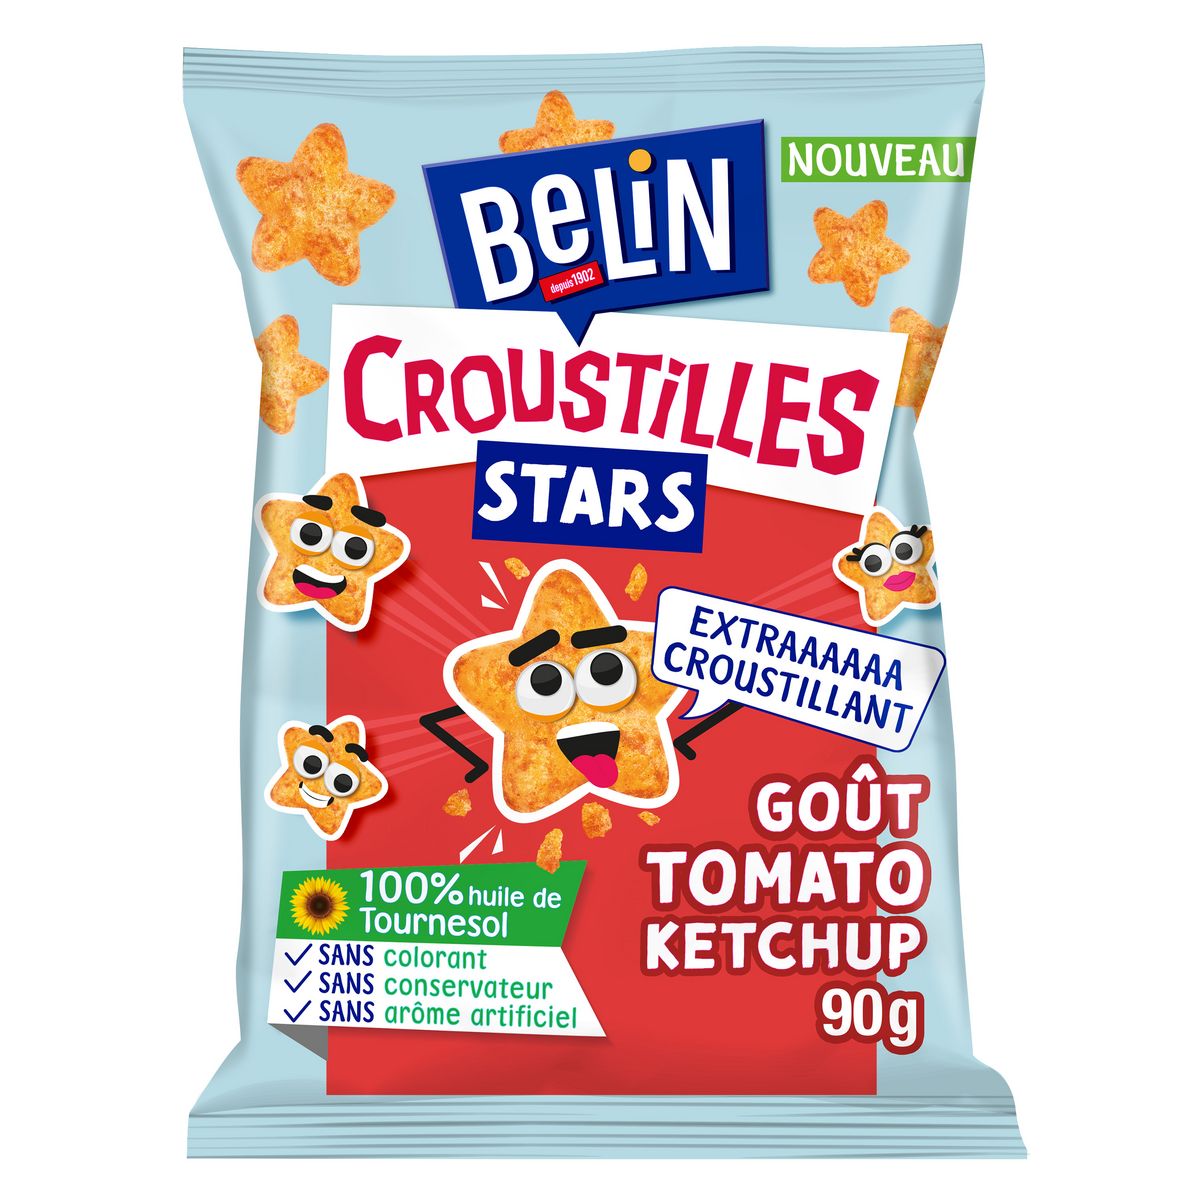 BELIN Croustilles stars biscuits salés goût tomate ketchup 90g